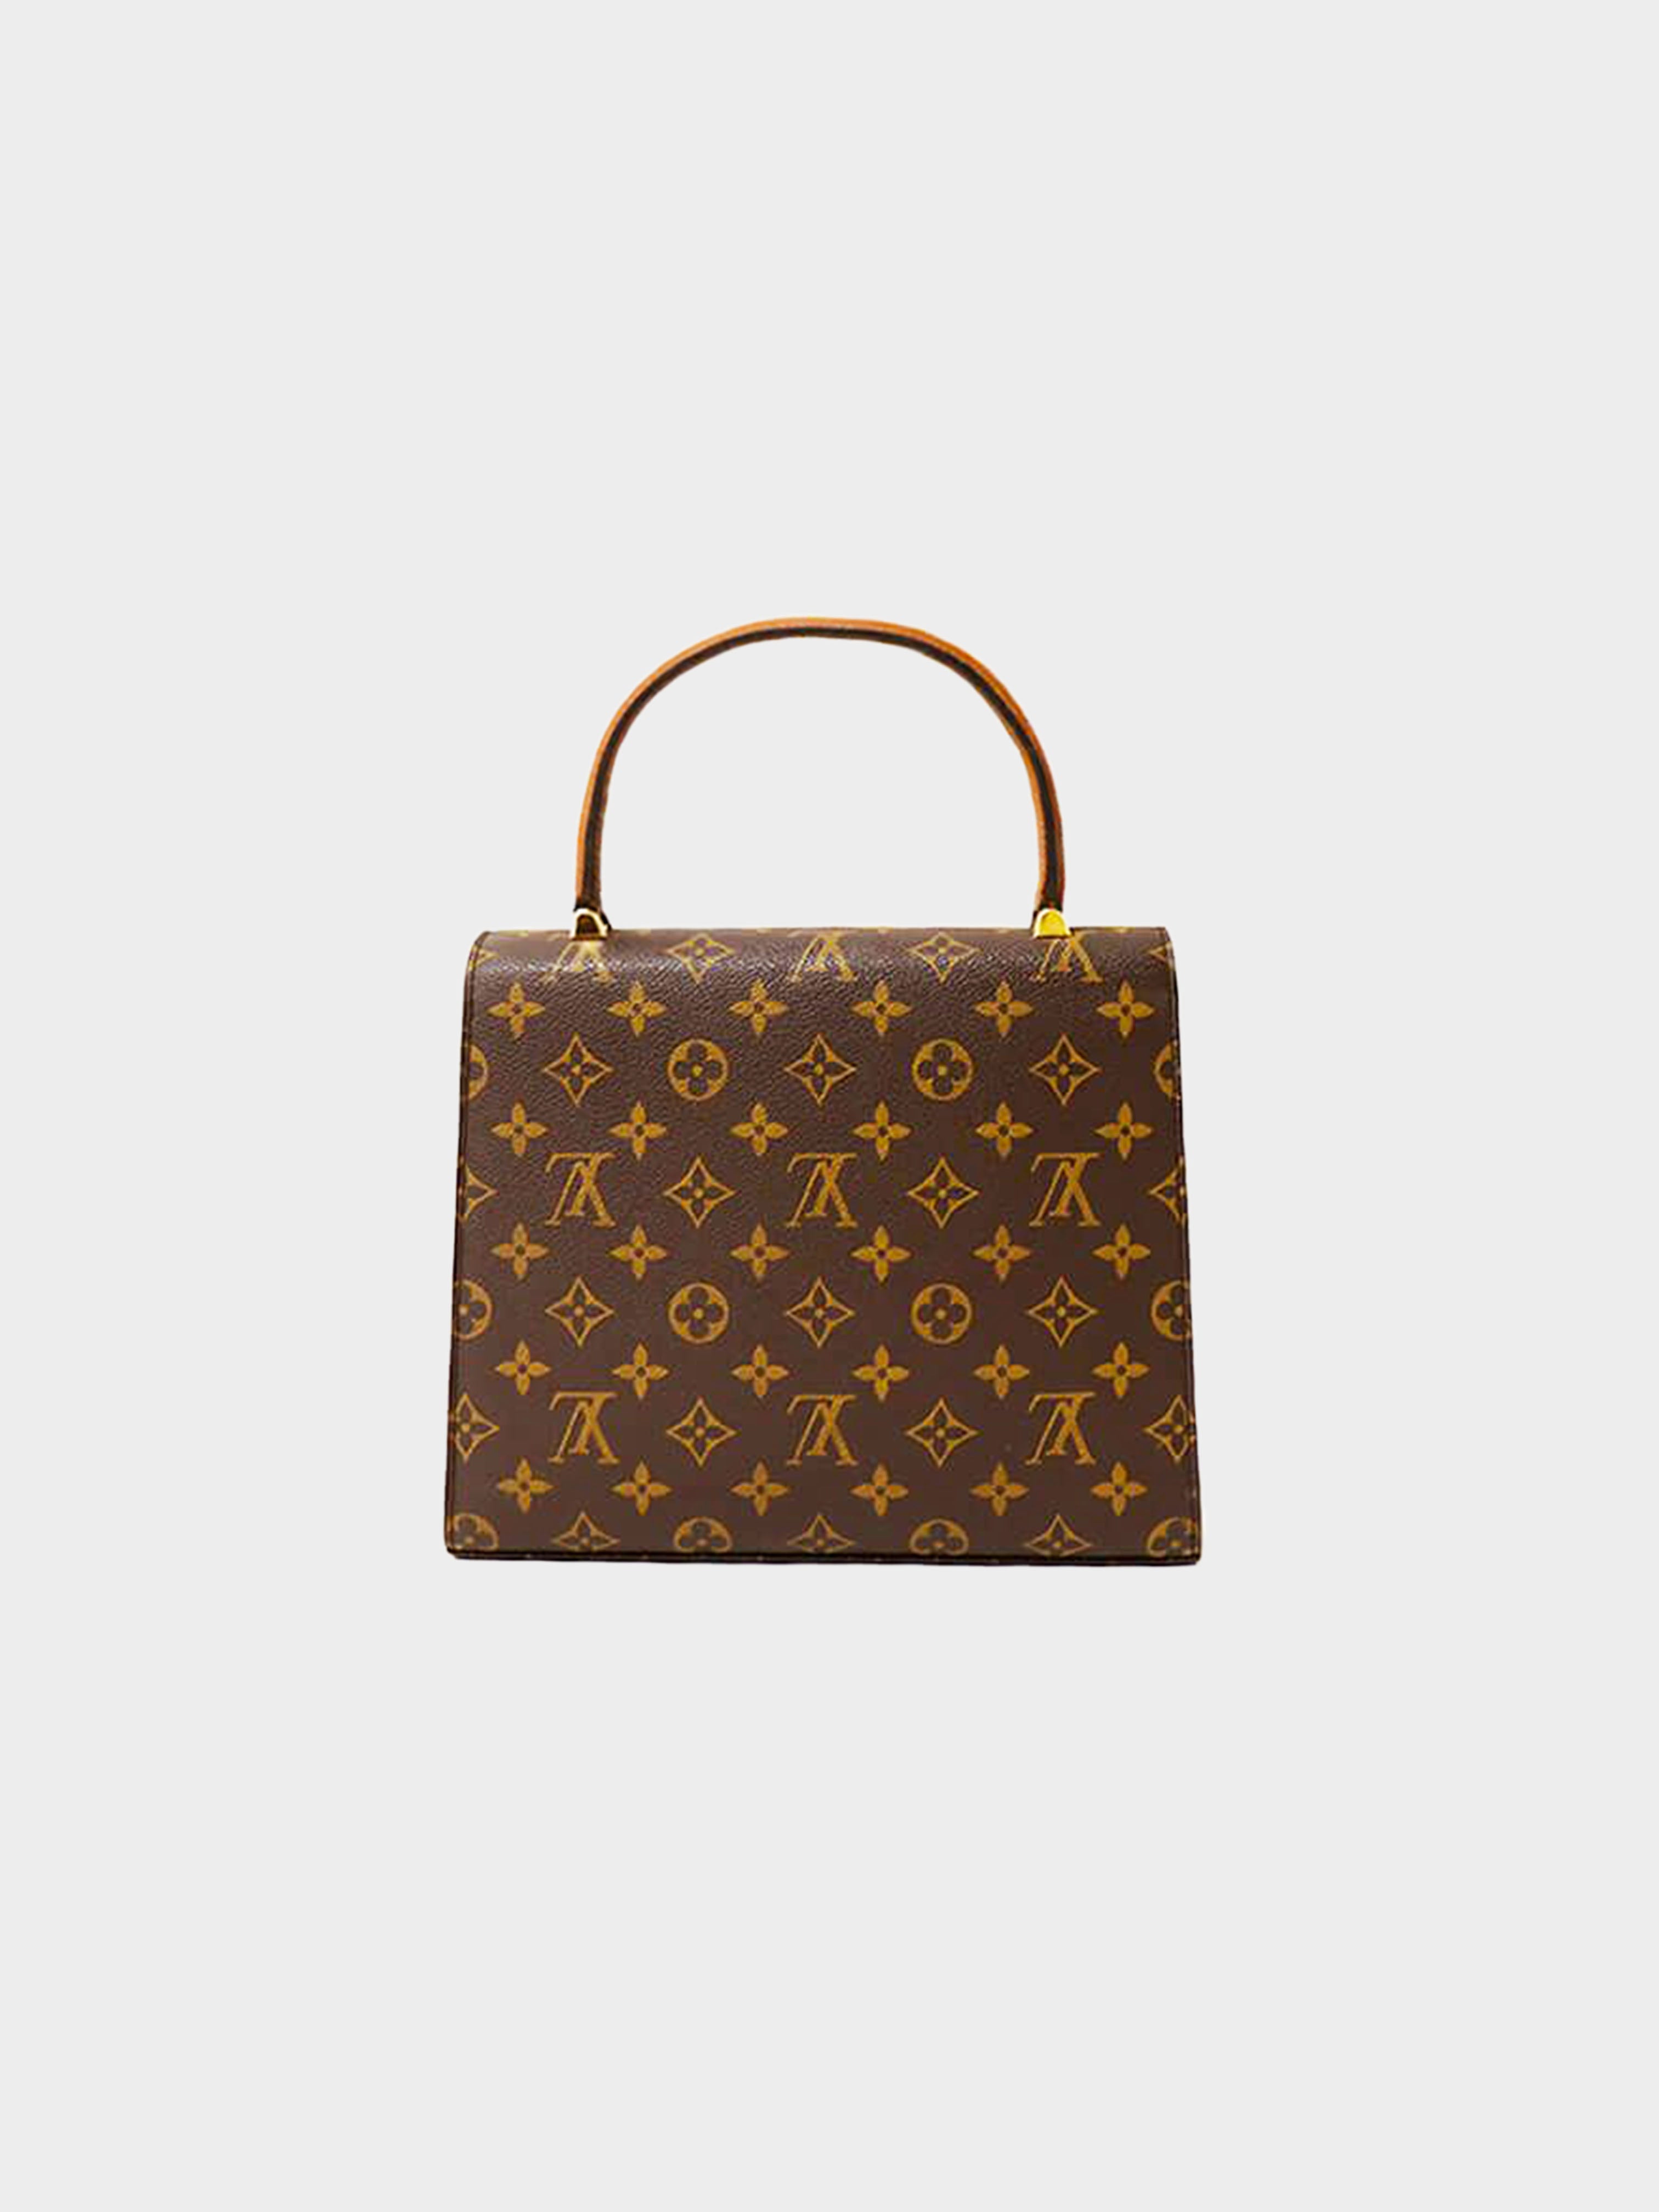 Louis Vuitton 1997 Monogram Malesherbes Bag